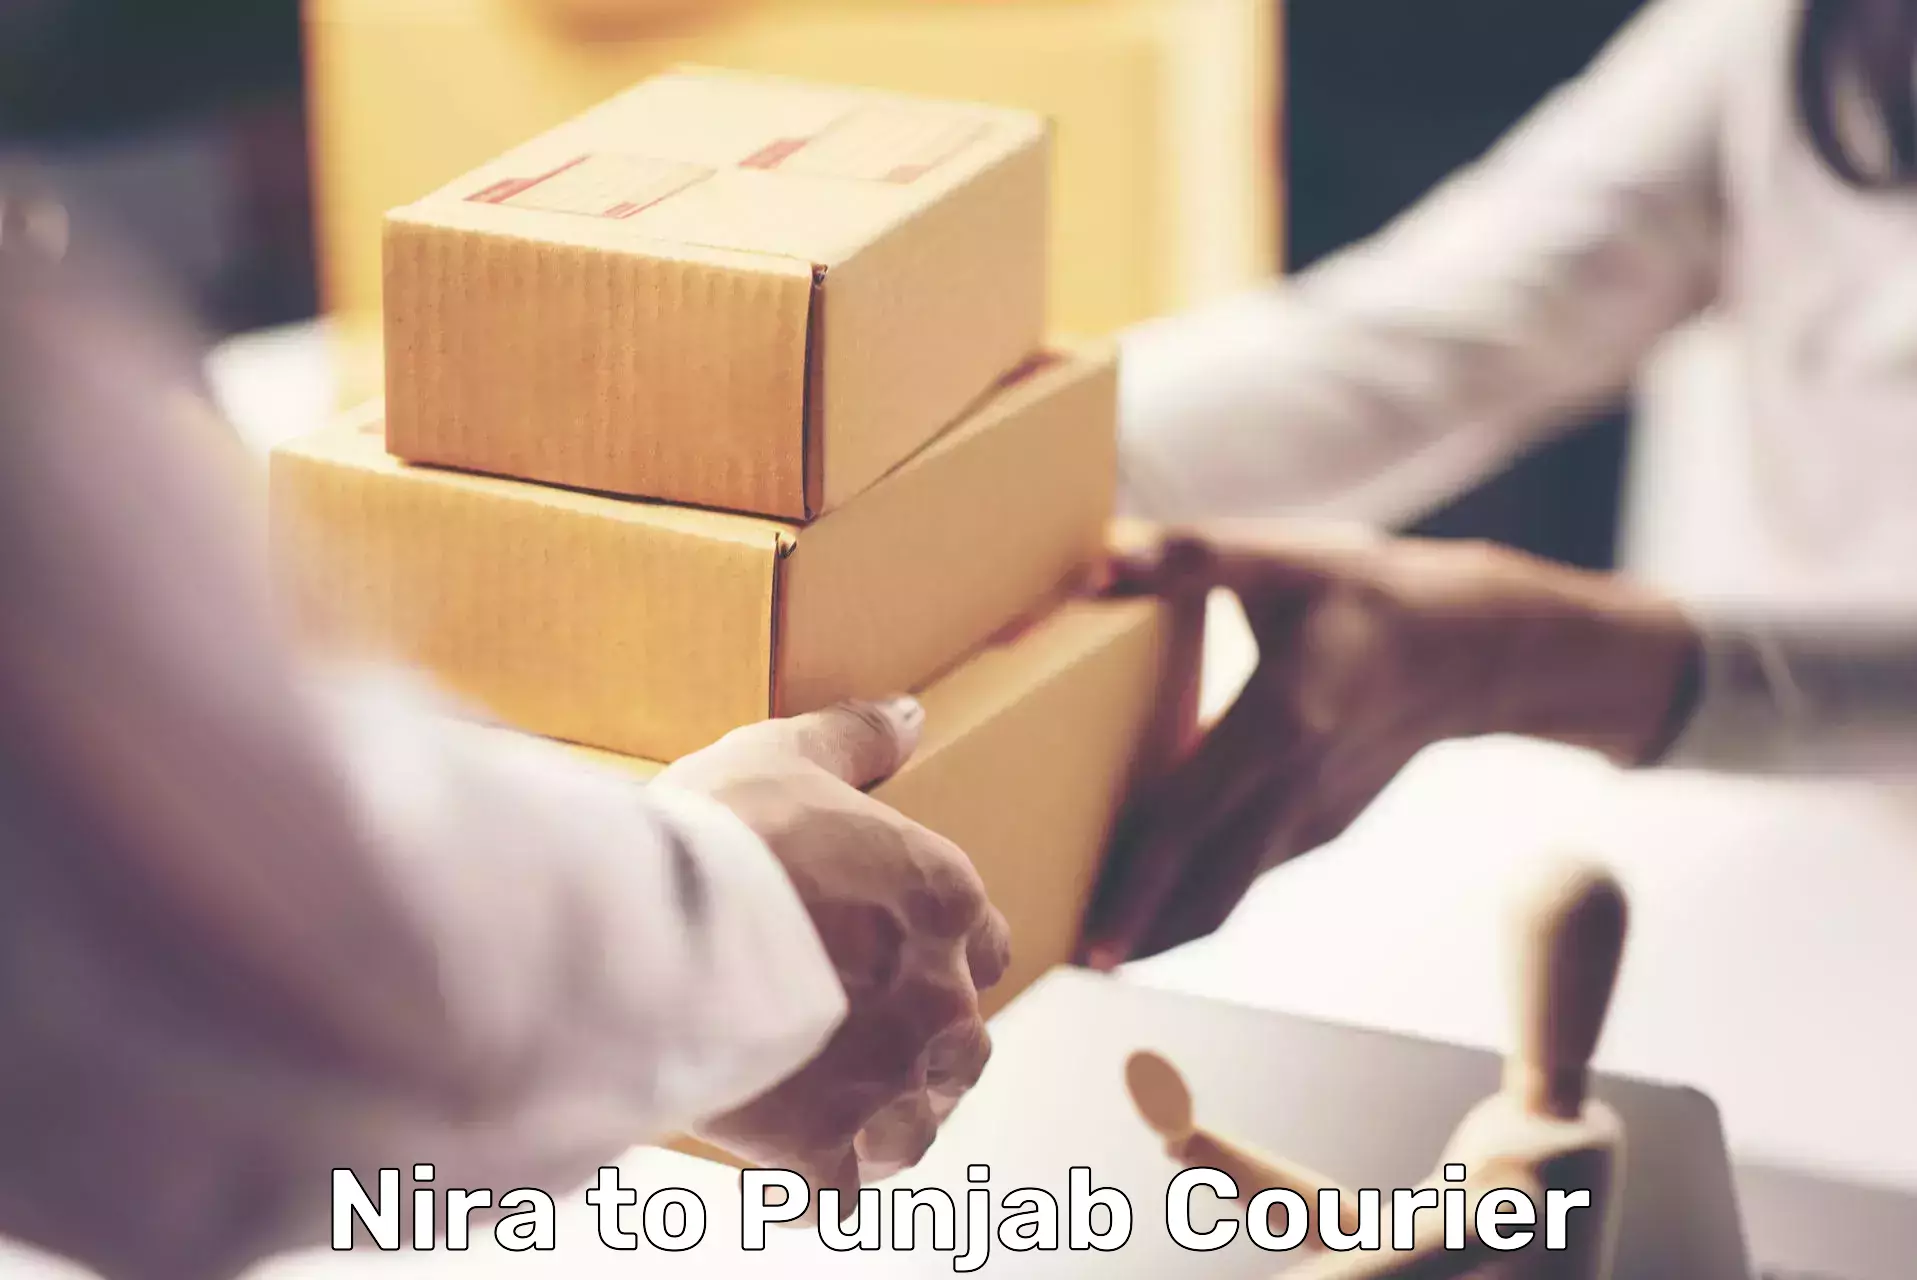 Efficient parcel service Nira to Patiala